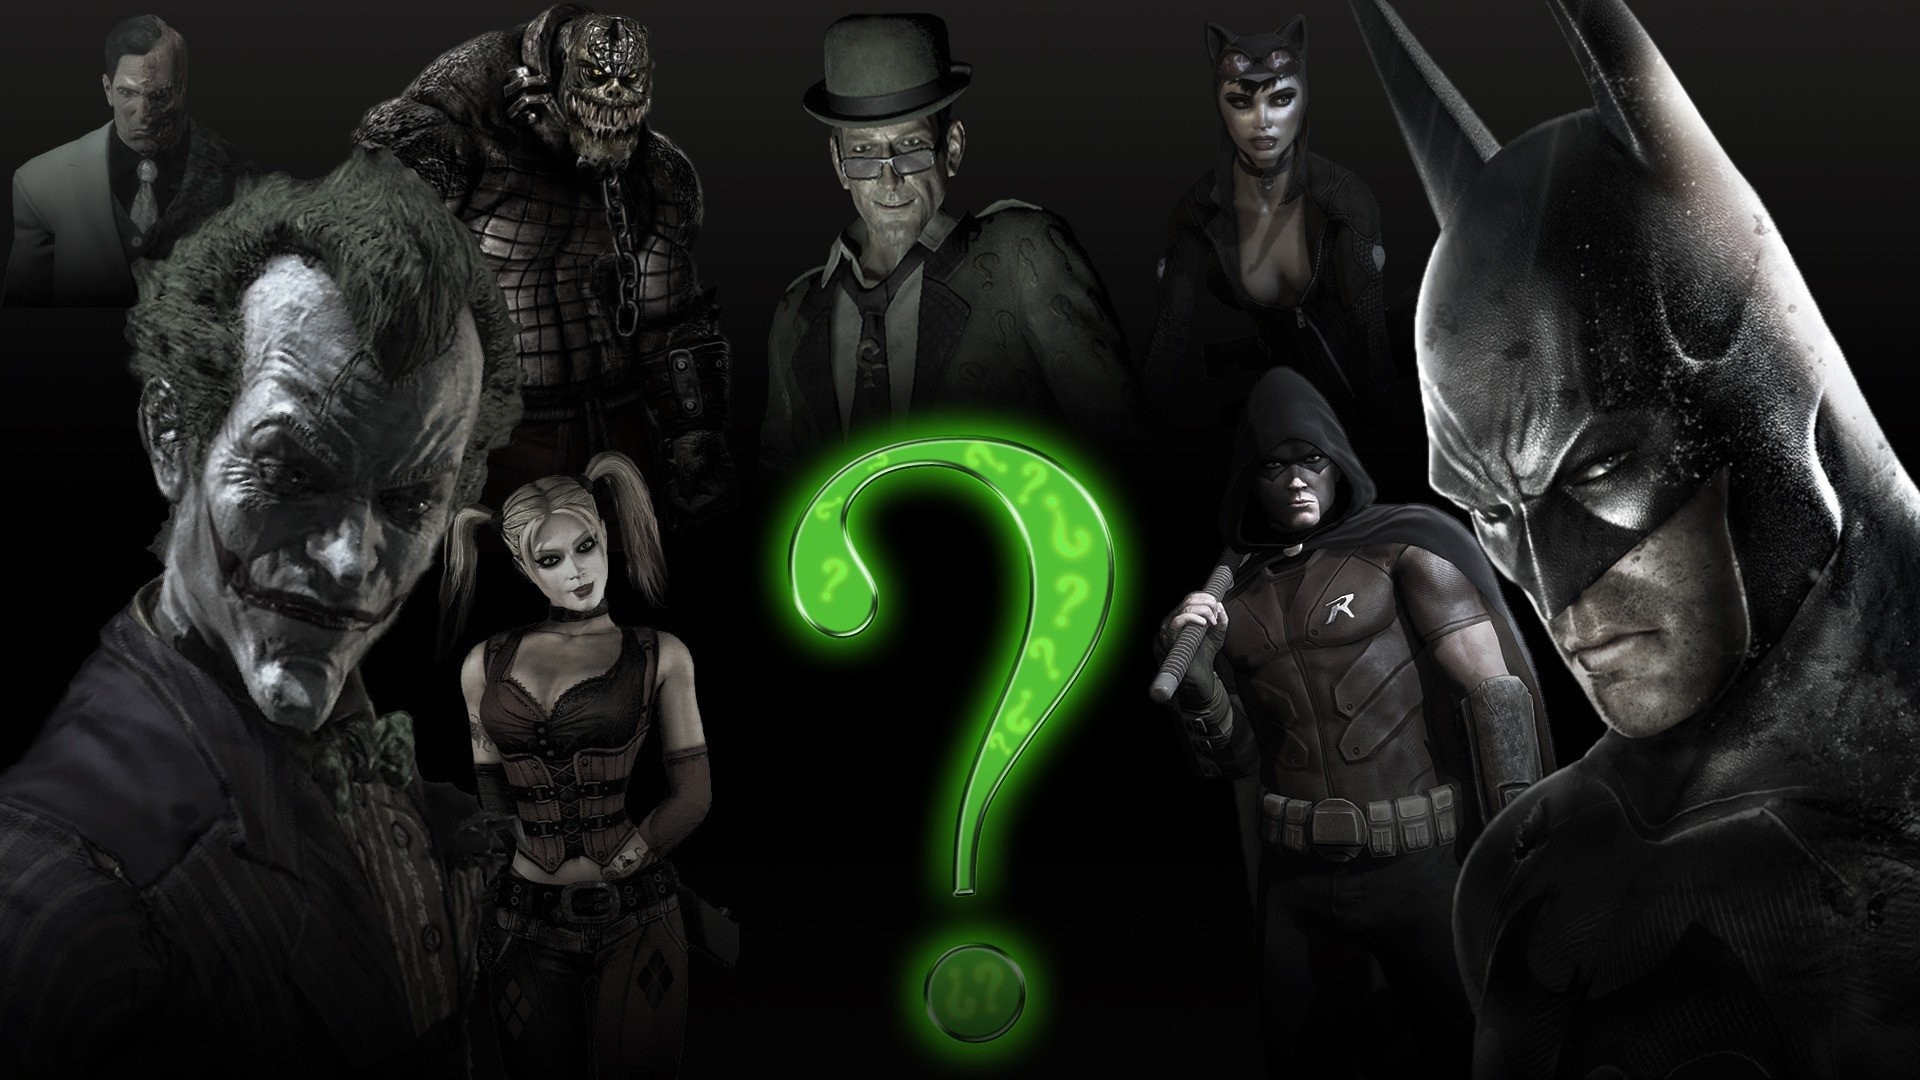 1920x1080 Video Oyunu - Batman: Arkham City - Batman - Arkham - Åehir - The Joker -  Riddle Wallpaper